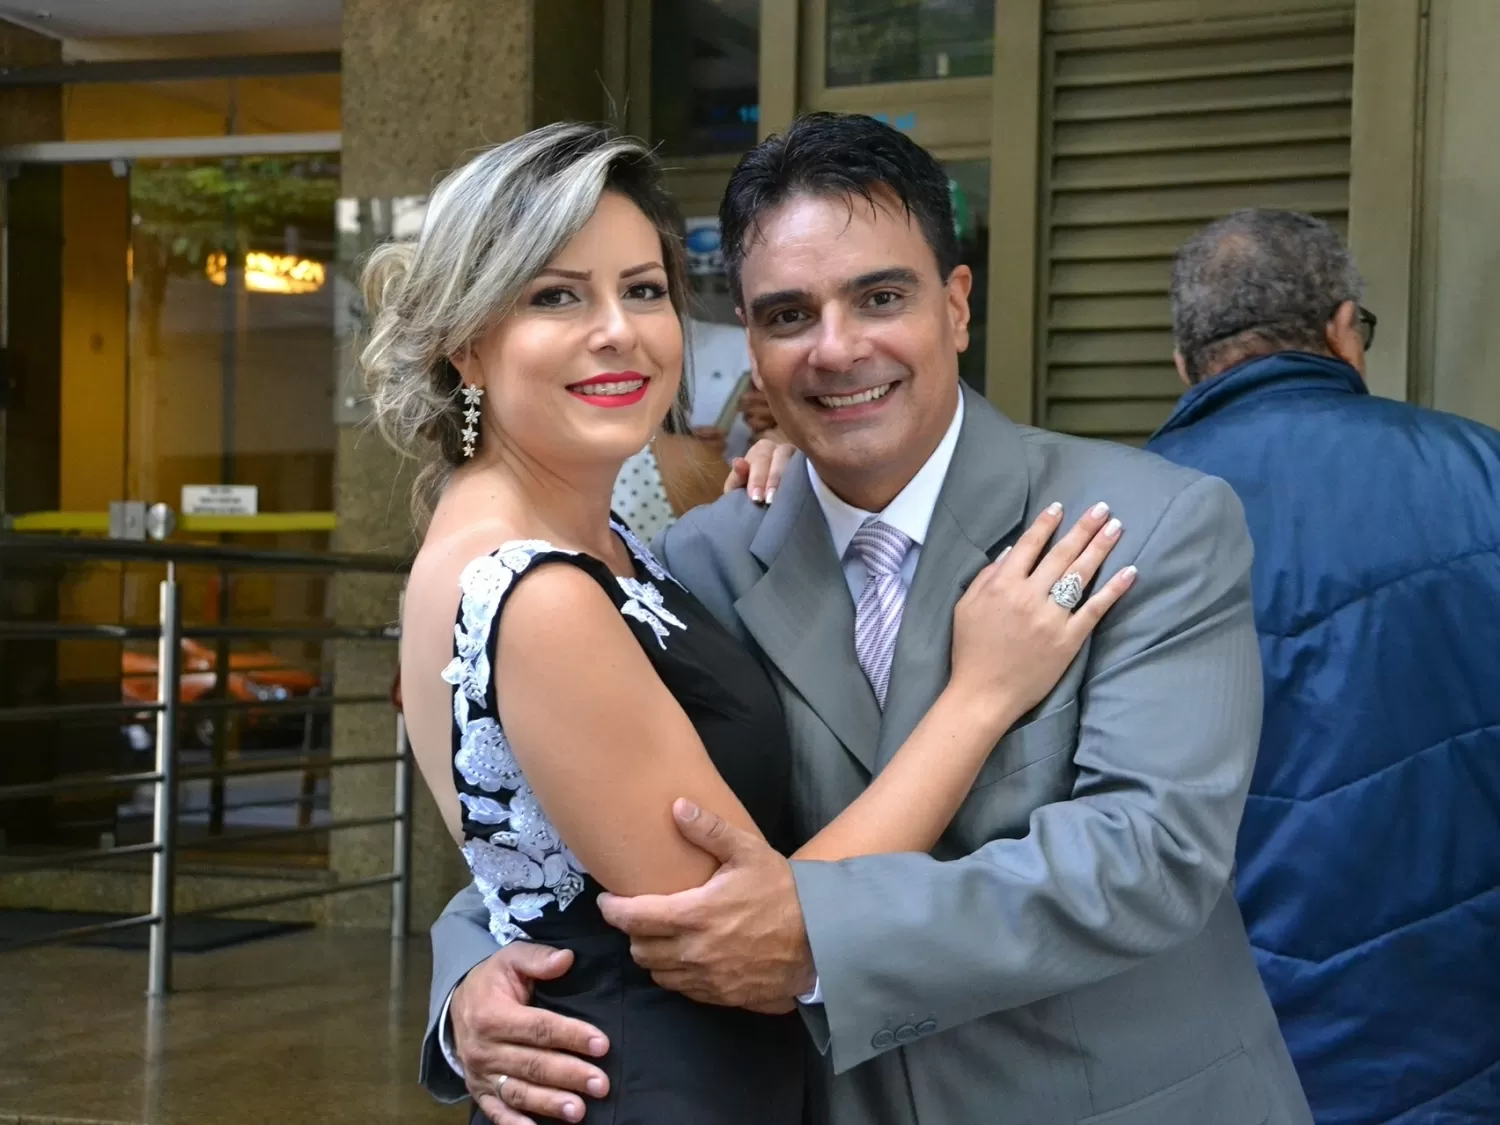 Guilherme de Pádua e Juliana Lacerda estão juntos há mais de um ano - Reprodução/Facebook/Juliana Lacerda